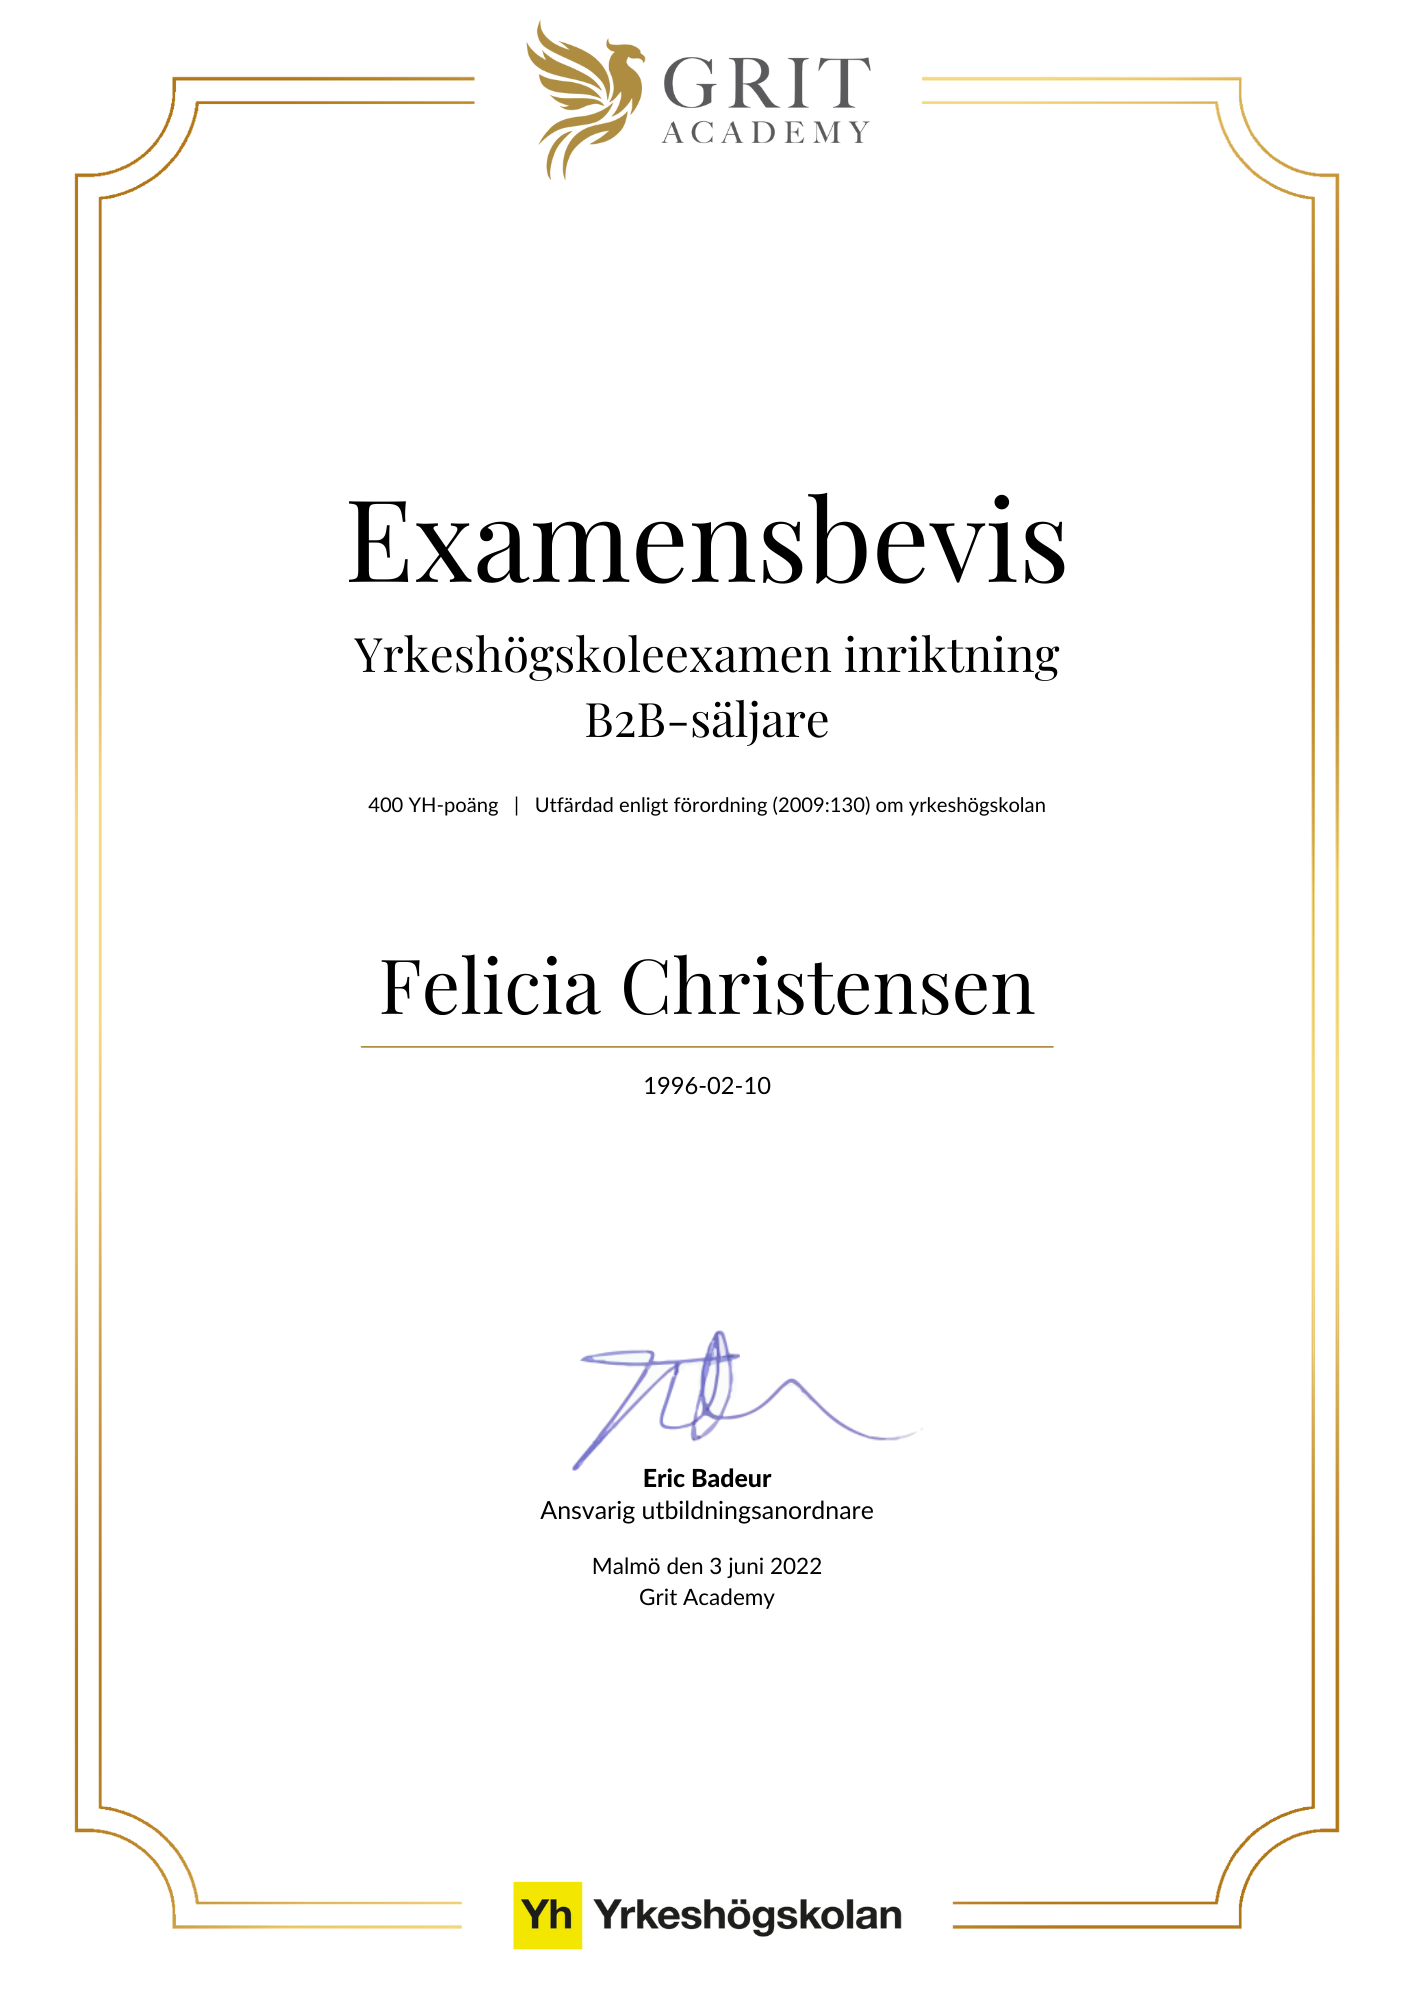 Examensbevis Felicia Christensen